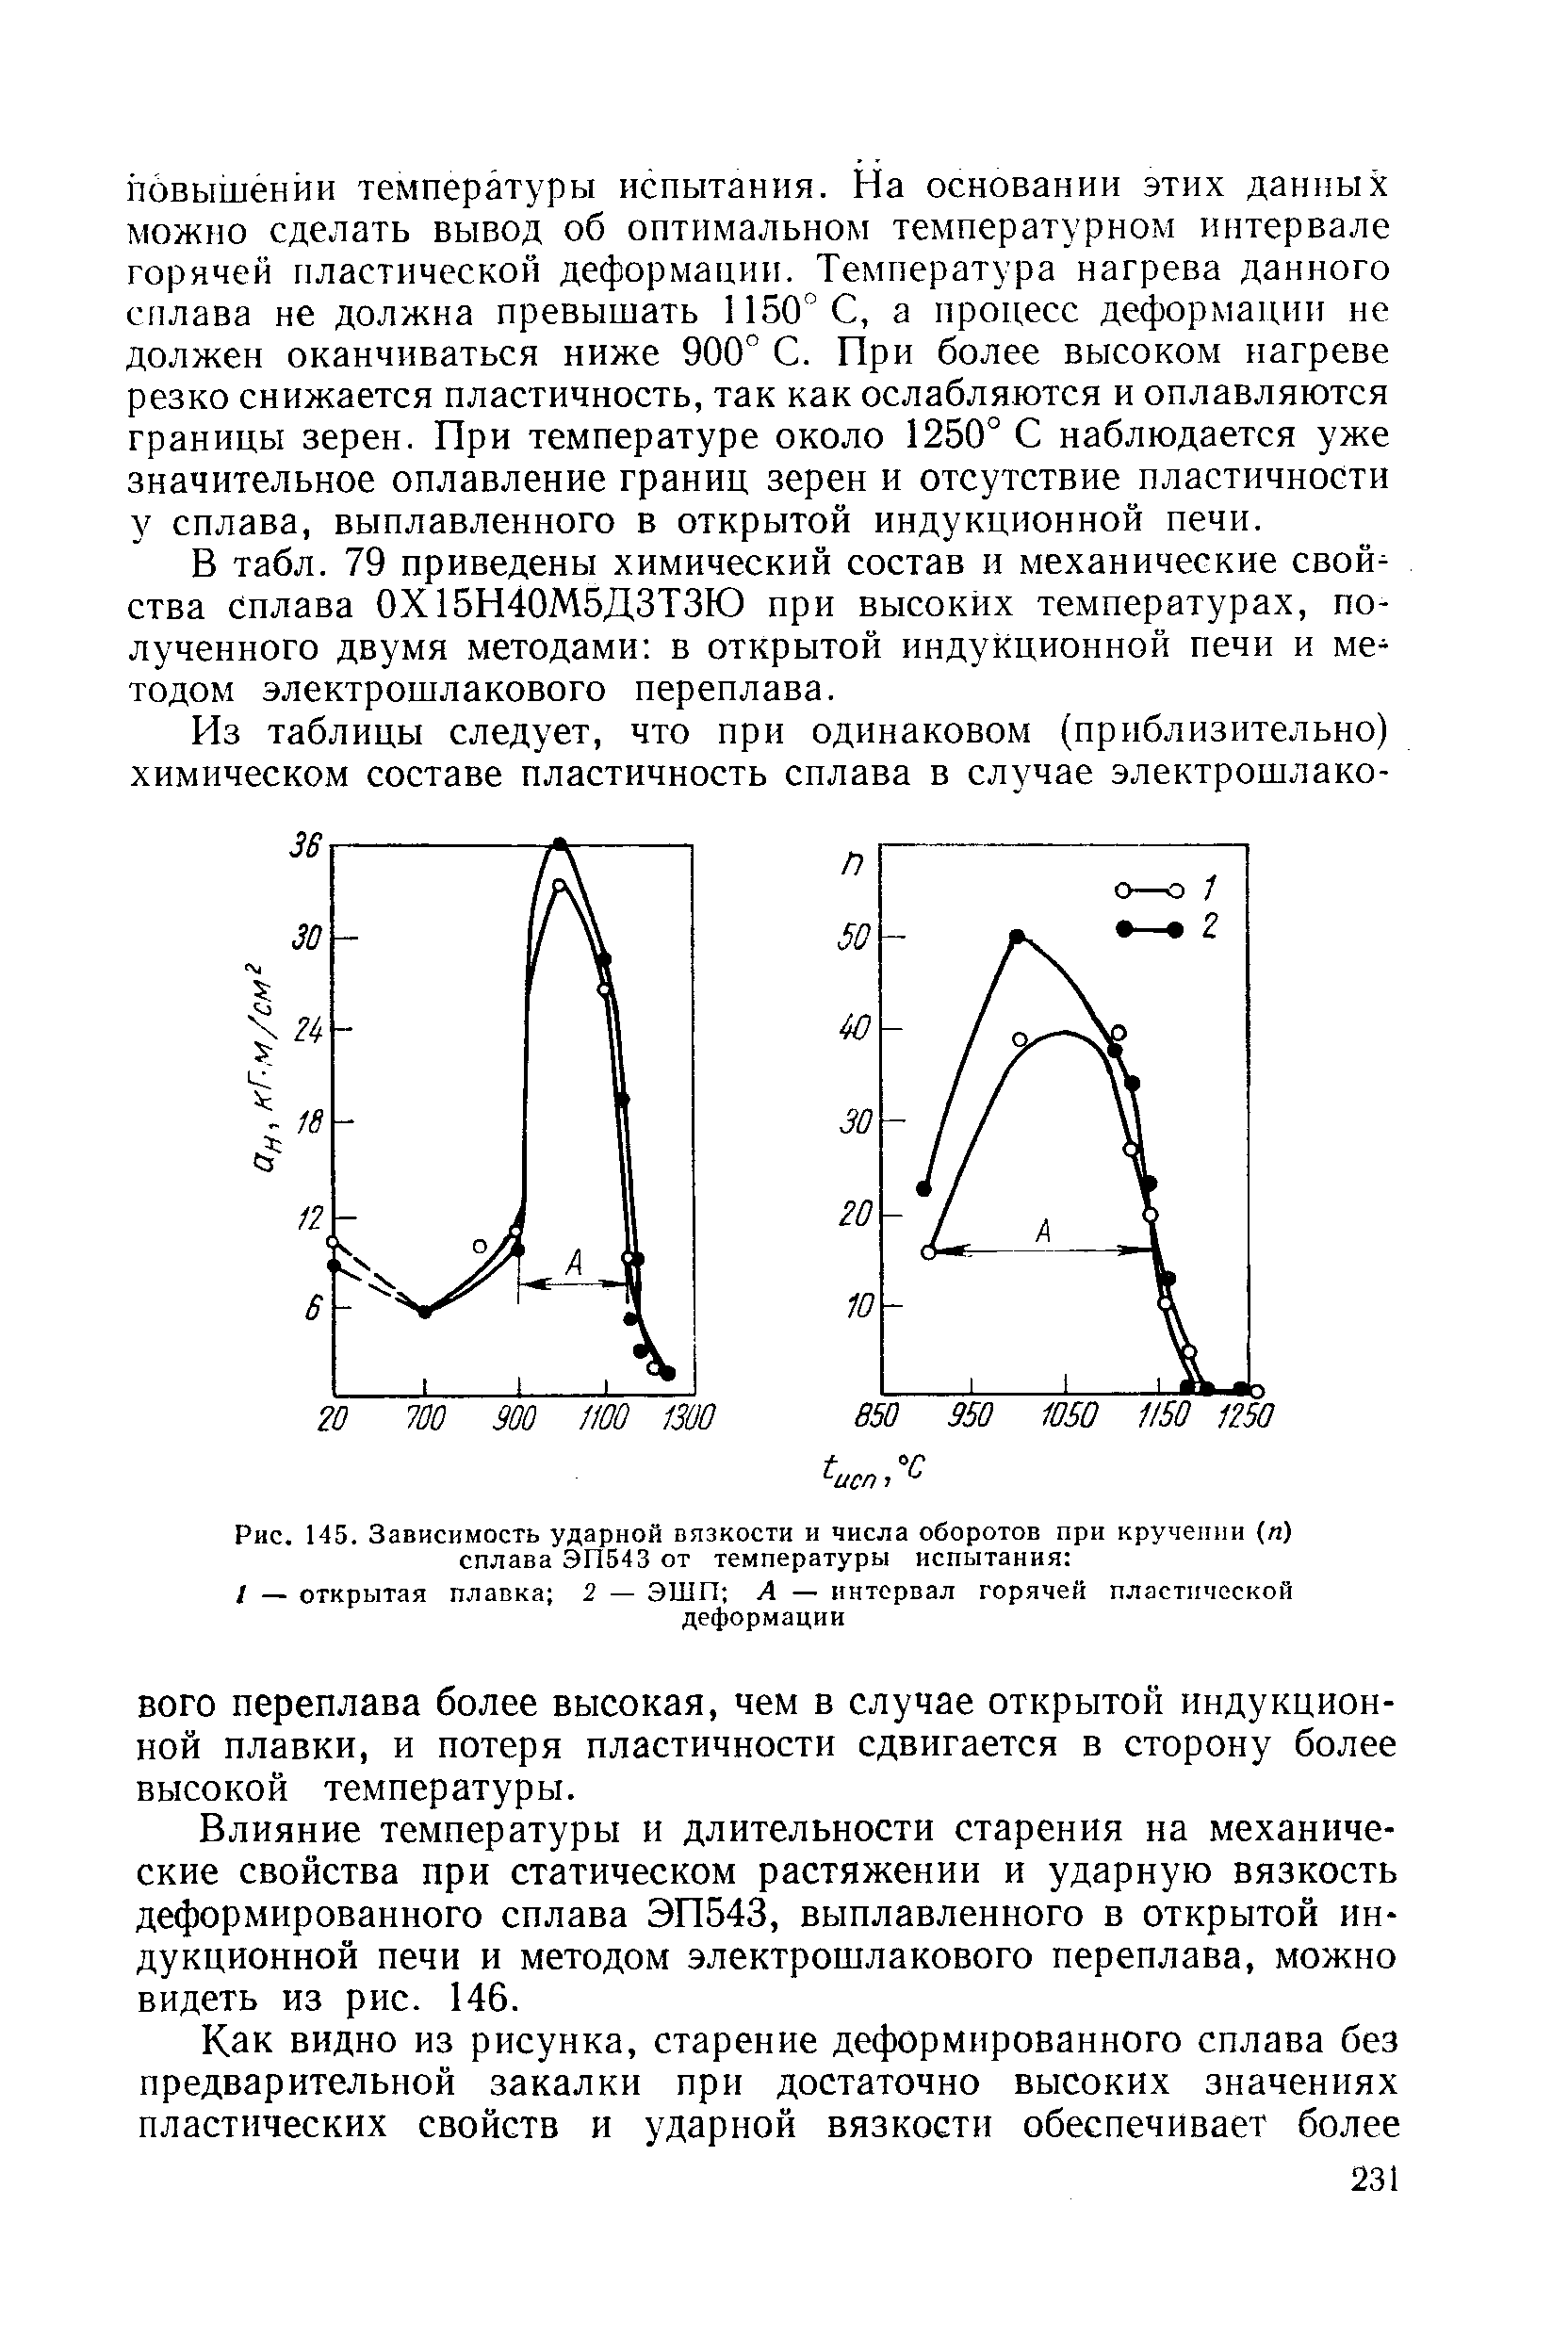 Рис. 145. Зависимость ударной вязкости и числа оборотов при кручении (л) сплава ЭП543 от температуры испытания 
